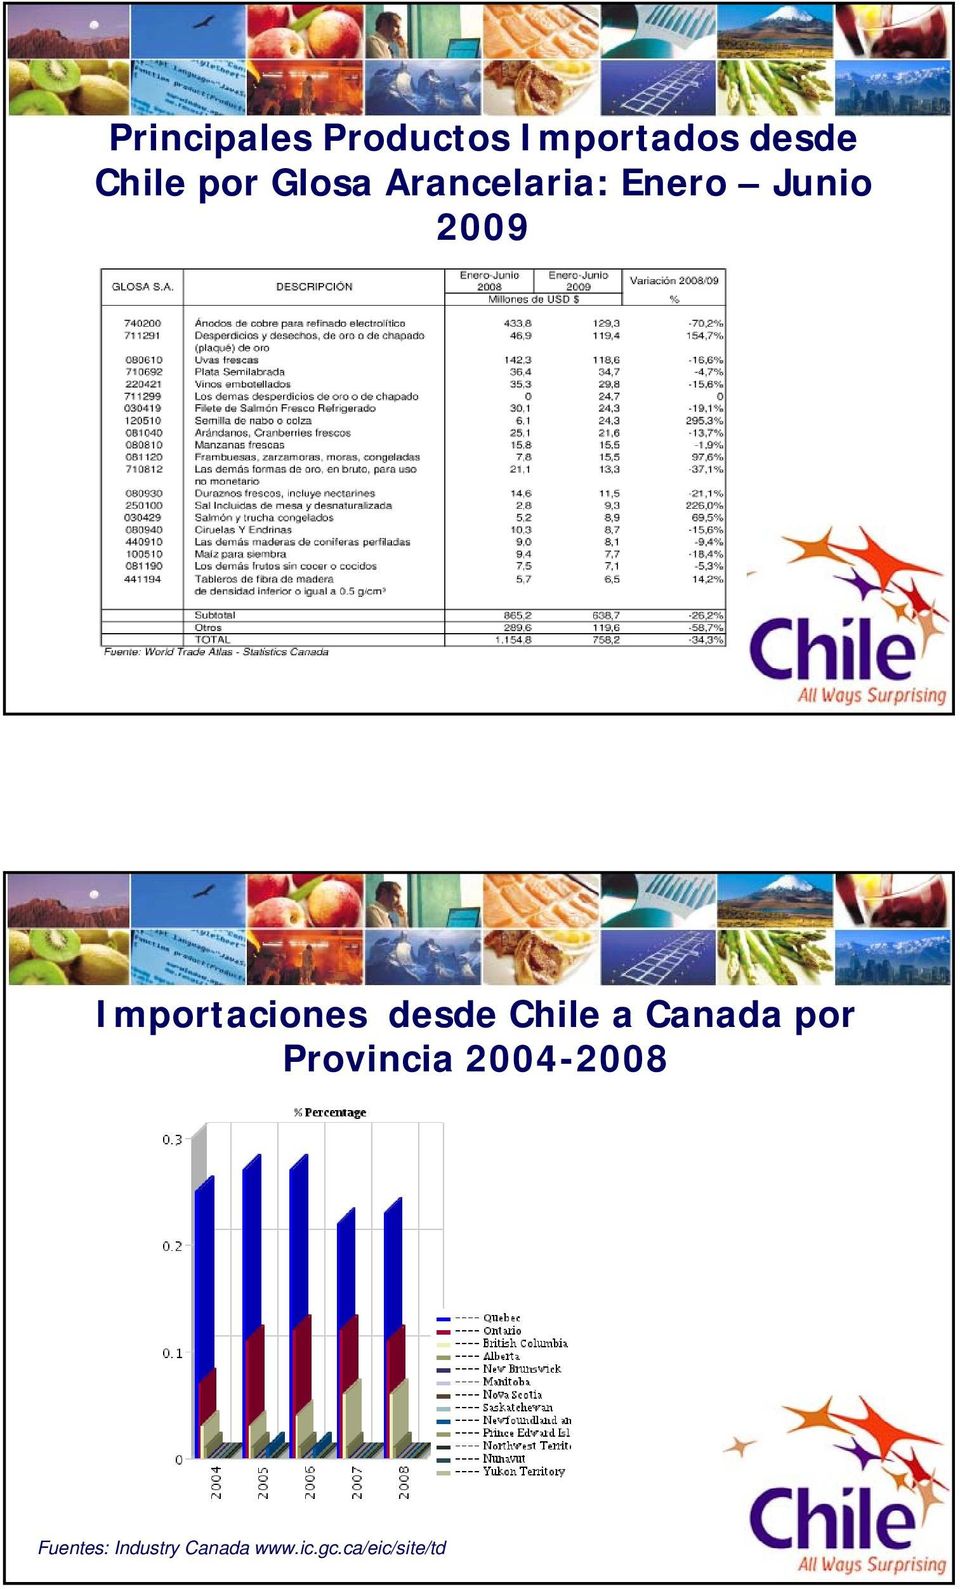 Importaciones desde Chile a Canada por Provincia